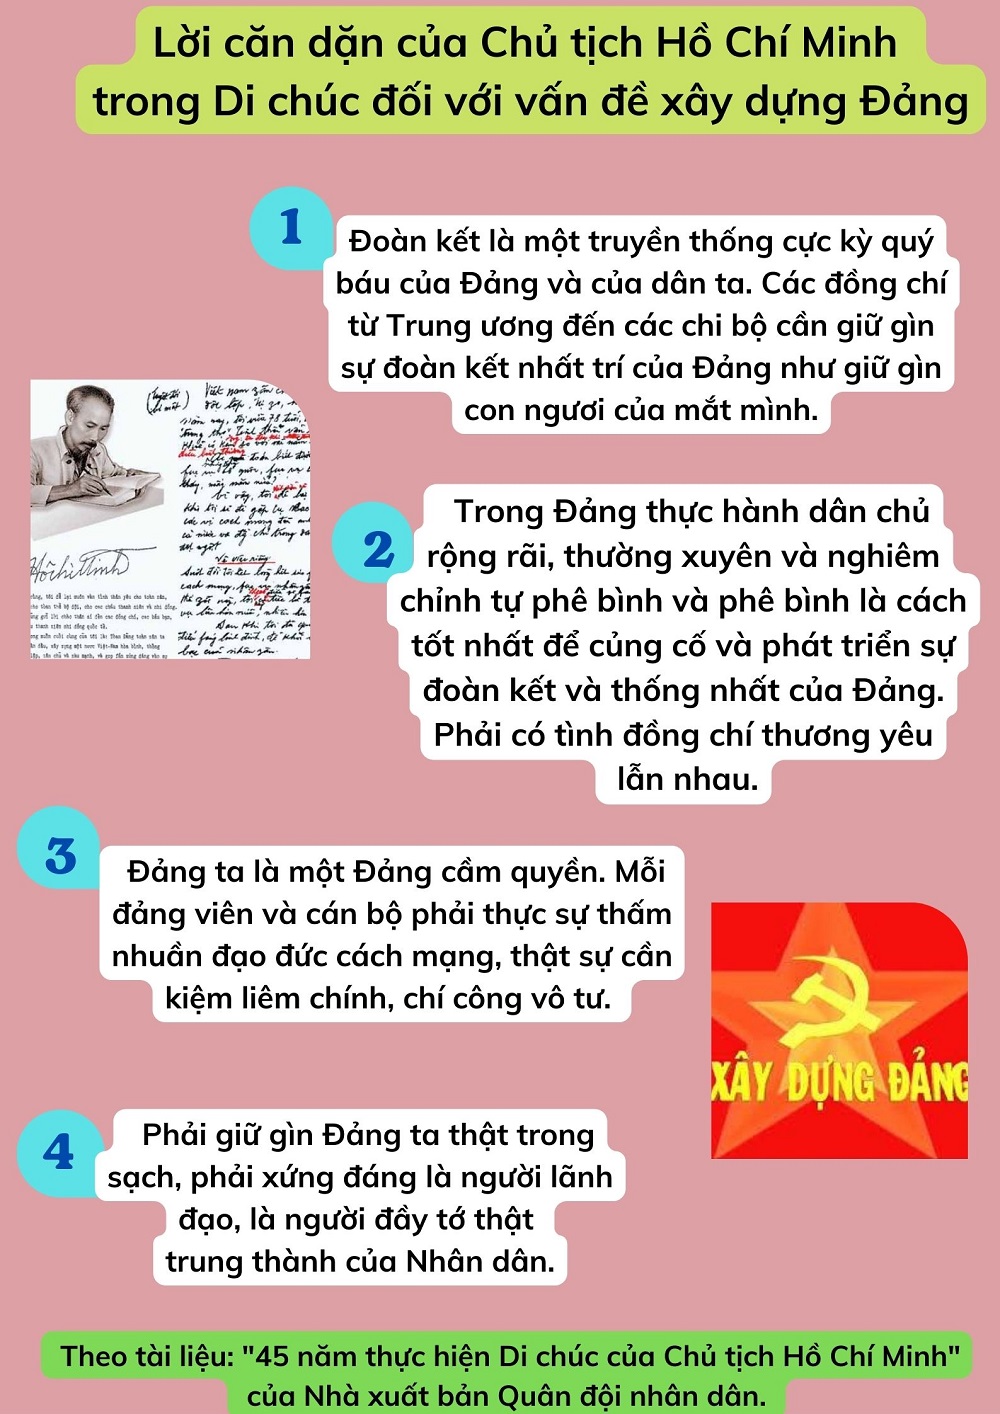 Lời căn dặn của Chủ tịch Hồ Chí Minh trong Di chúc đối với vấn đề xây dựng Đảng